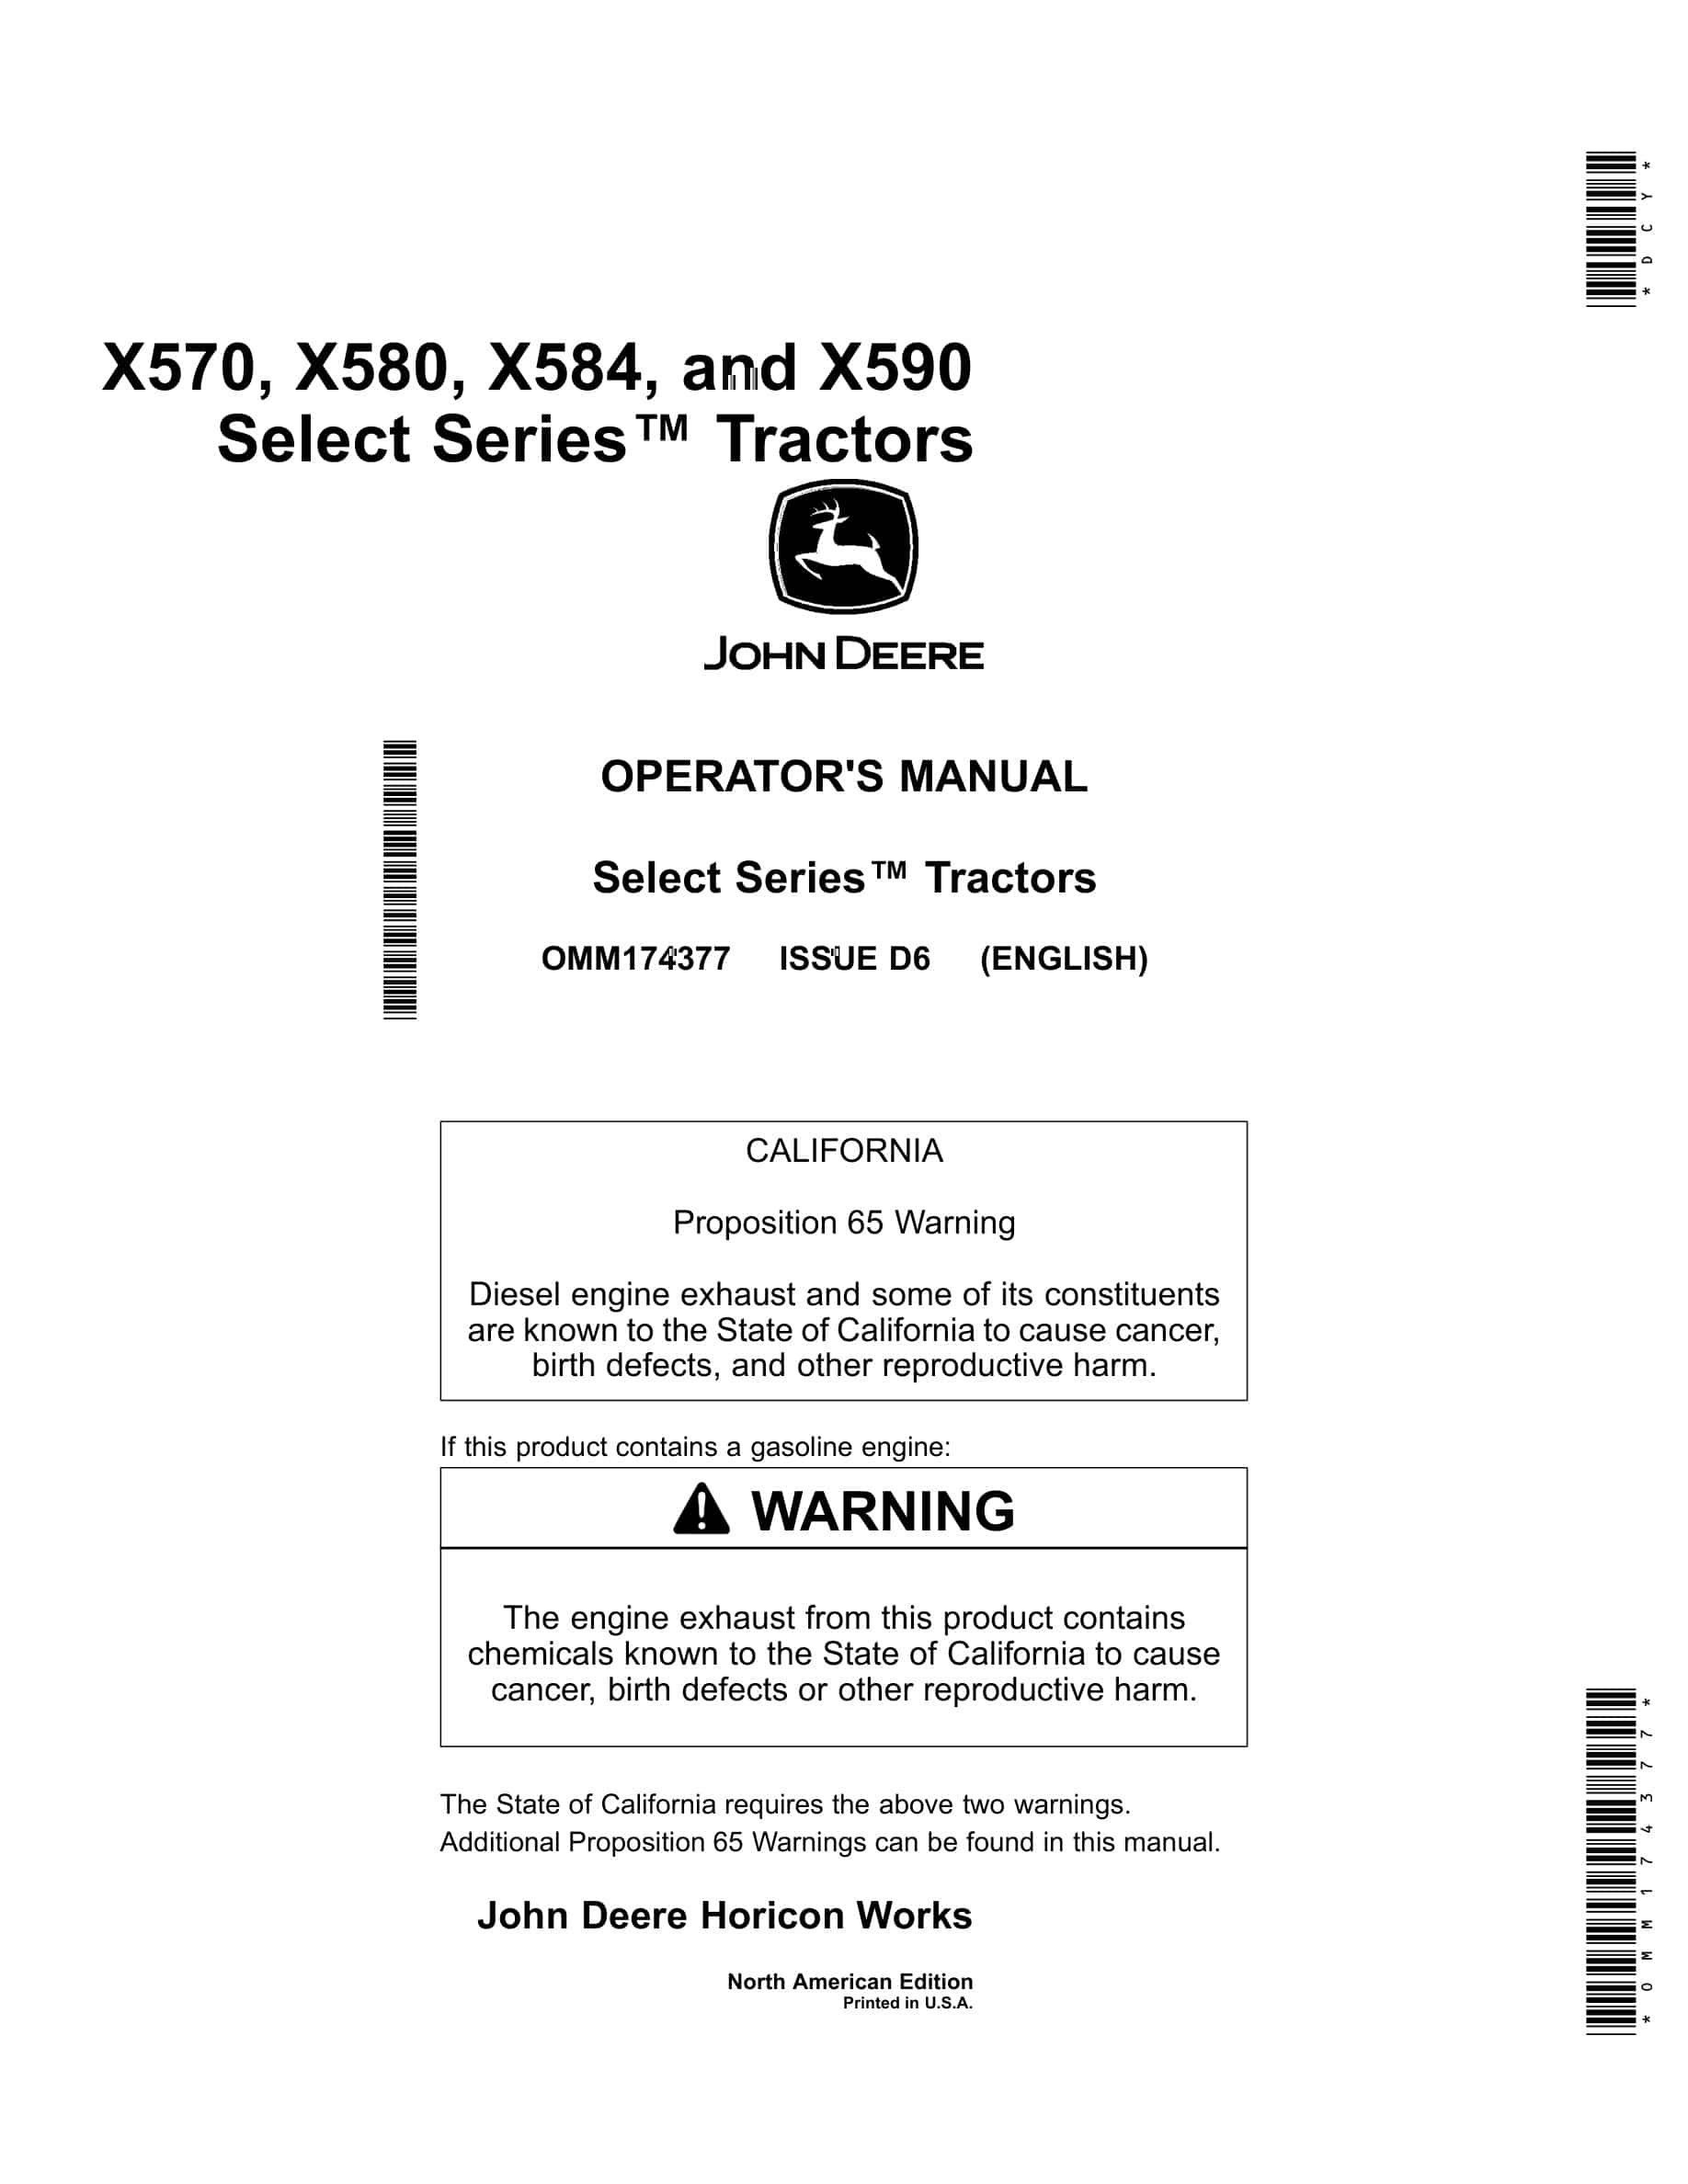 John Deere X570, X580, X584, and X590 Tractor Operator Manual OMM174377-1